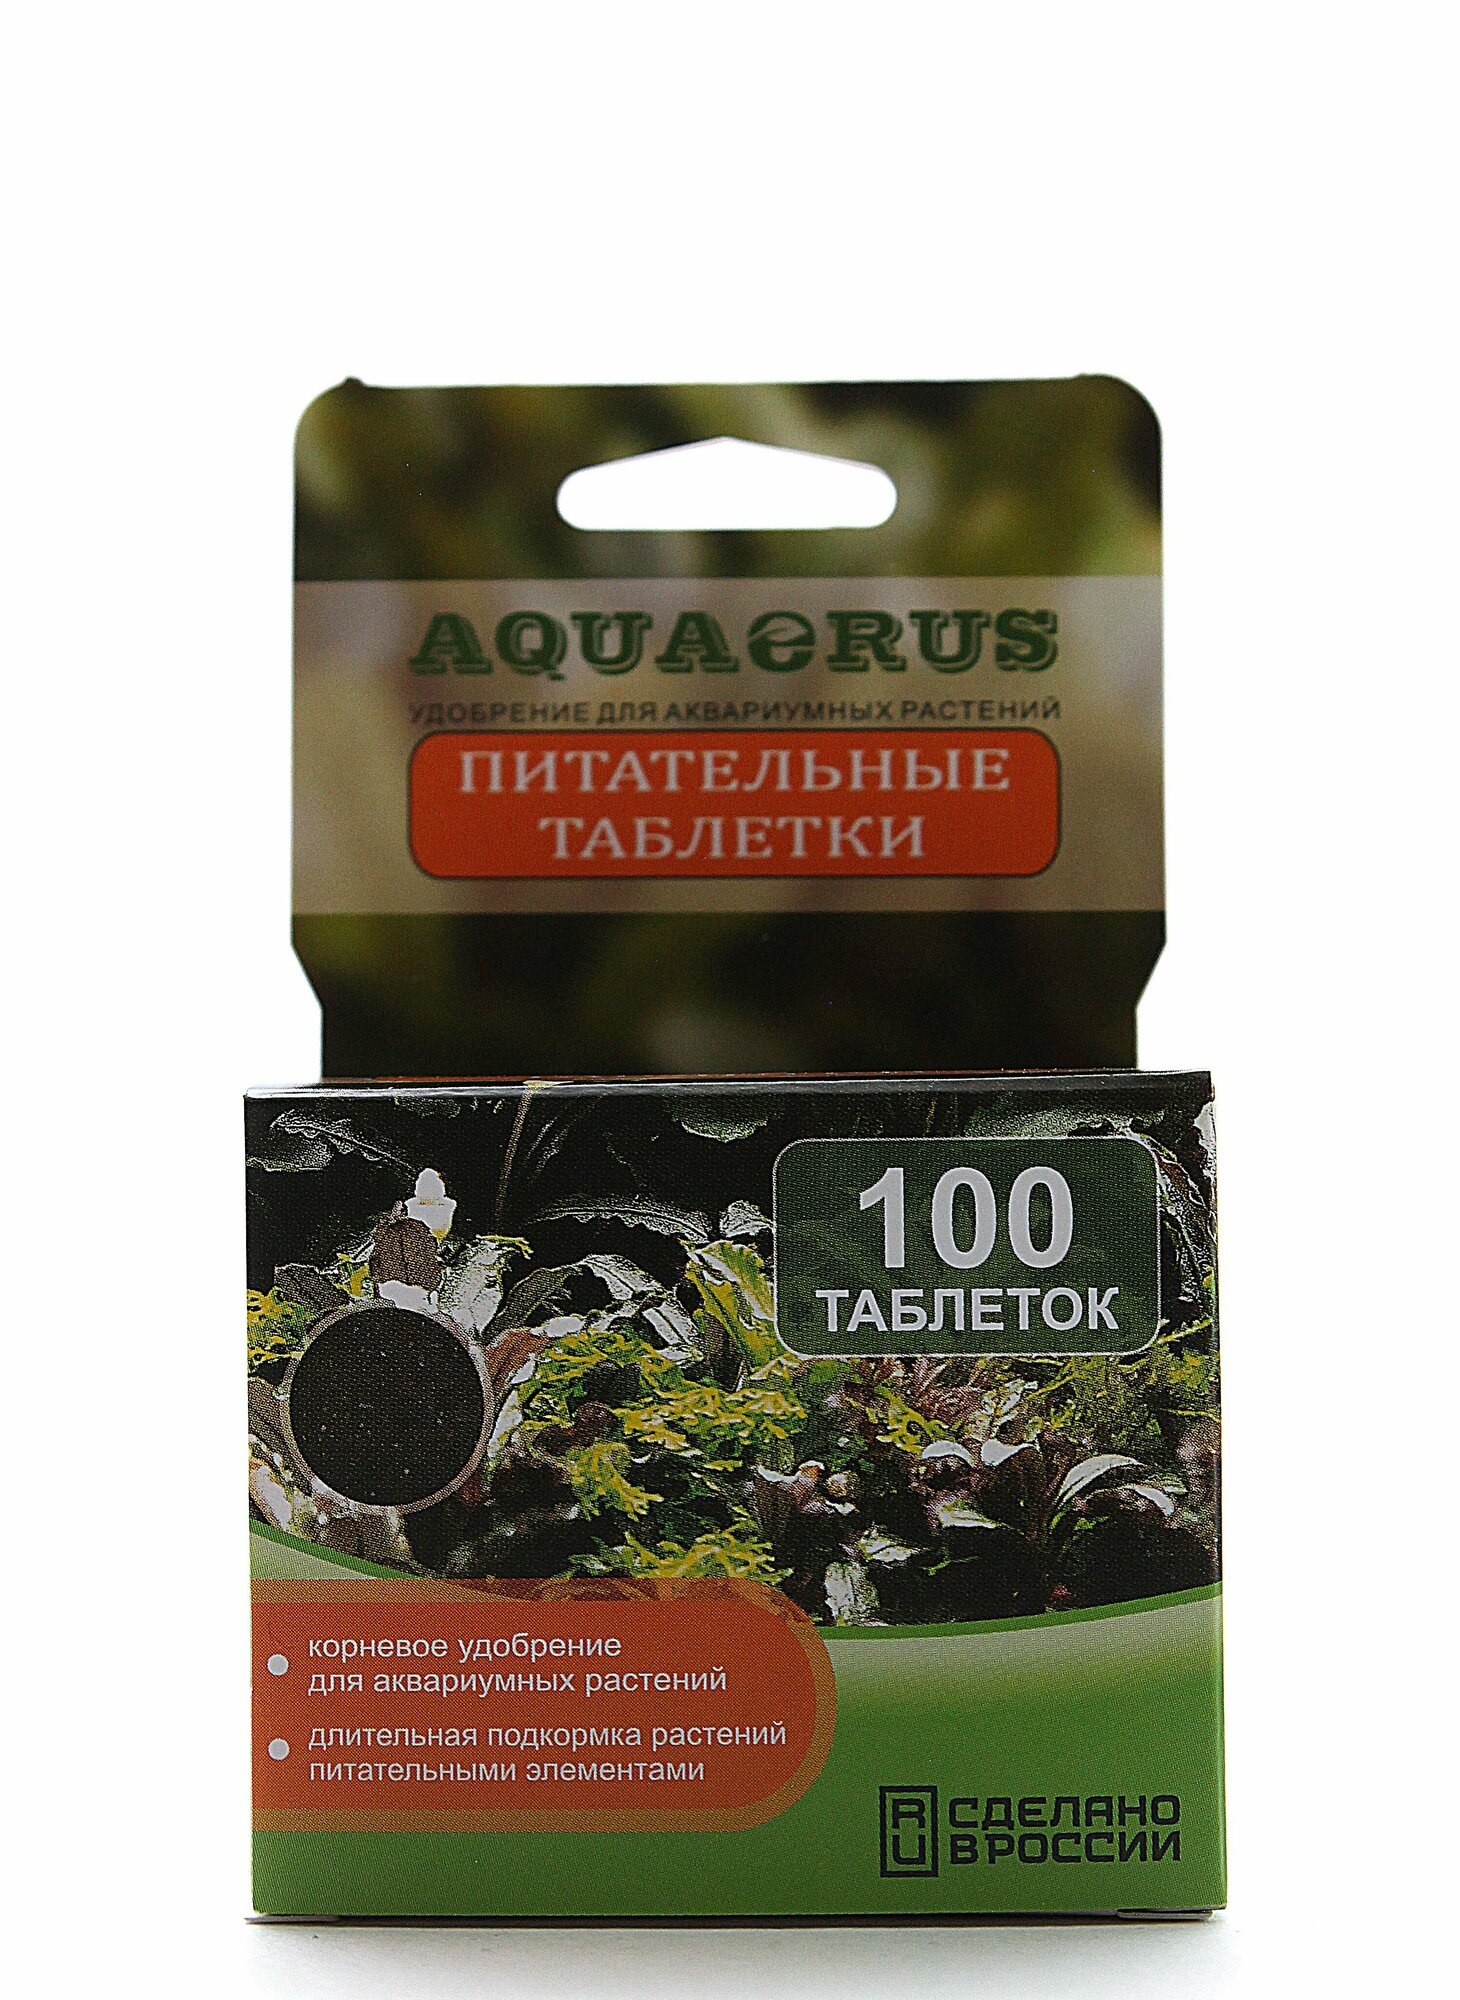 AQUAERUS Питательные таблетки 100 шт